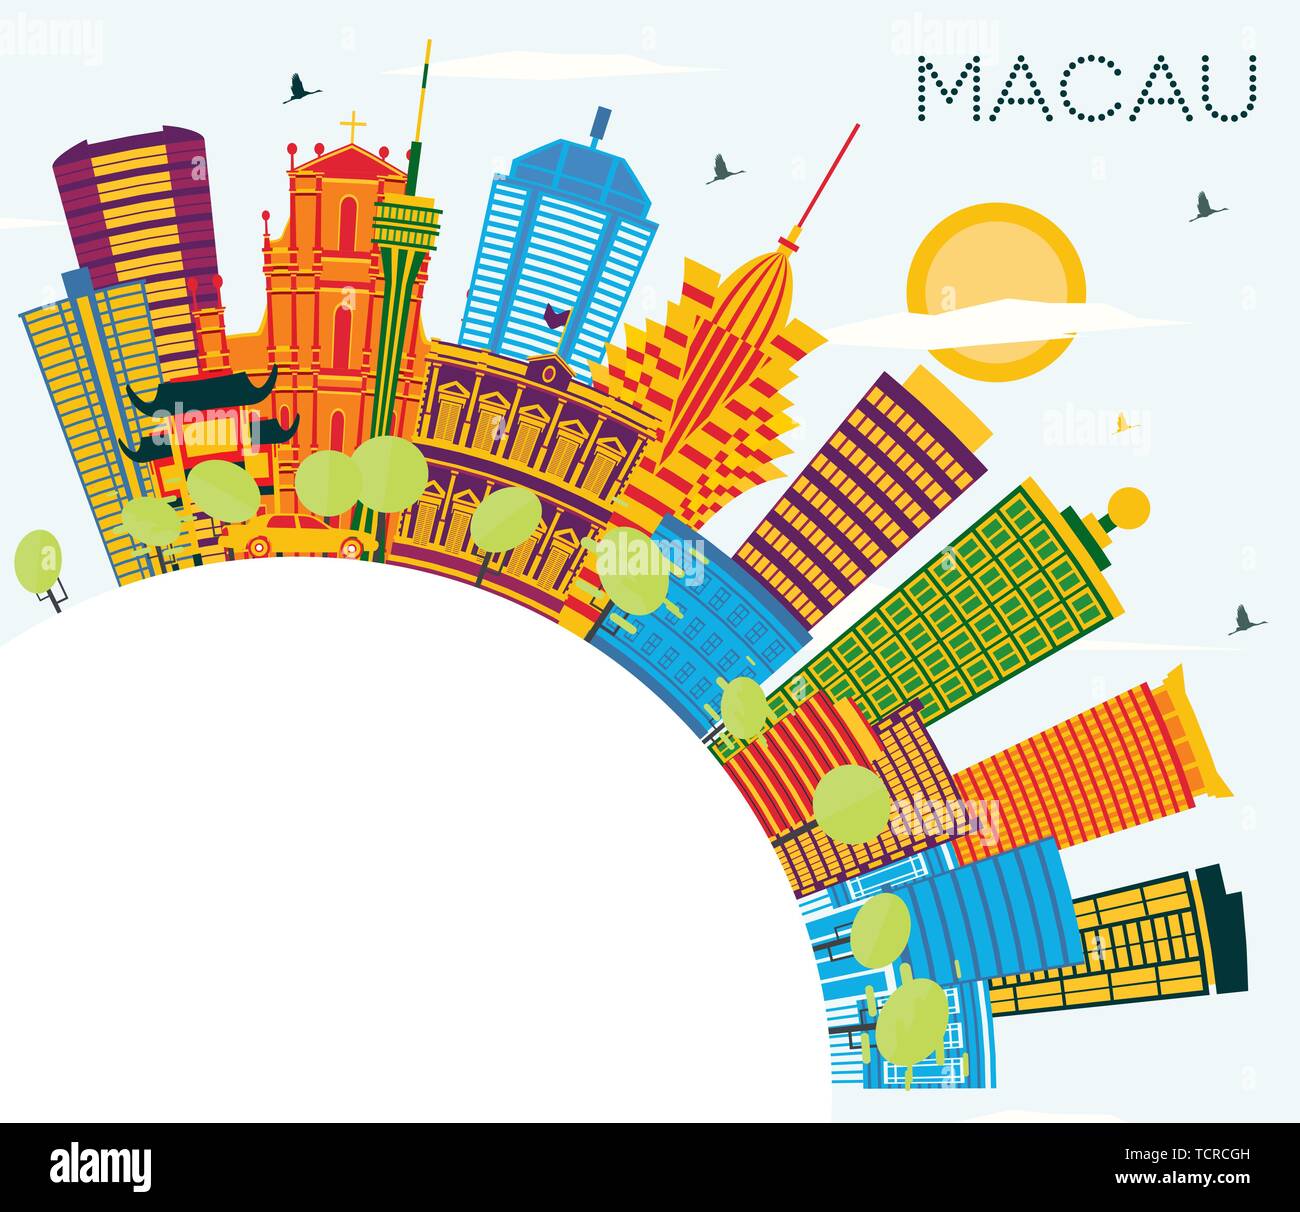 La Chine Macao Ville avec des bâtiments, de couleur bleu ciel et l'espace de copie. Vector Illustration. Les voyages d'affaires et tourisme Concept. Illustration de Vecteur